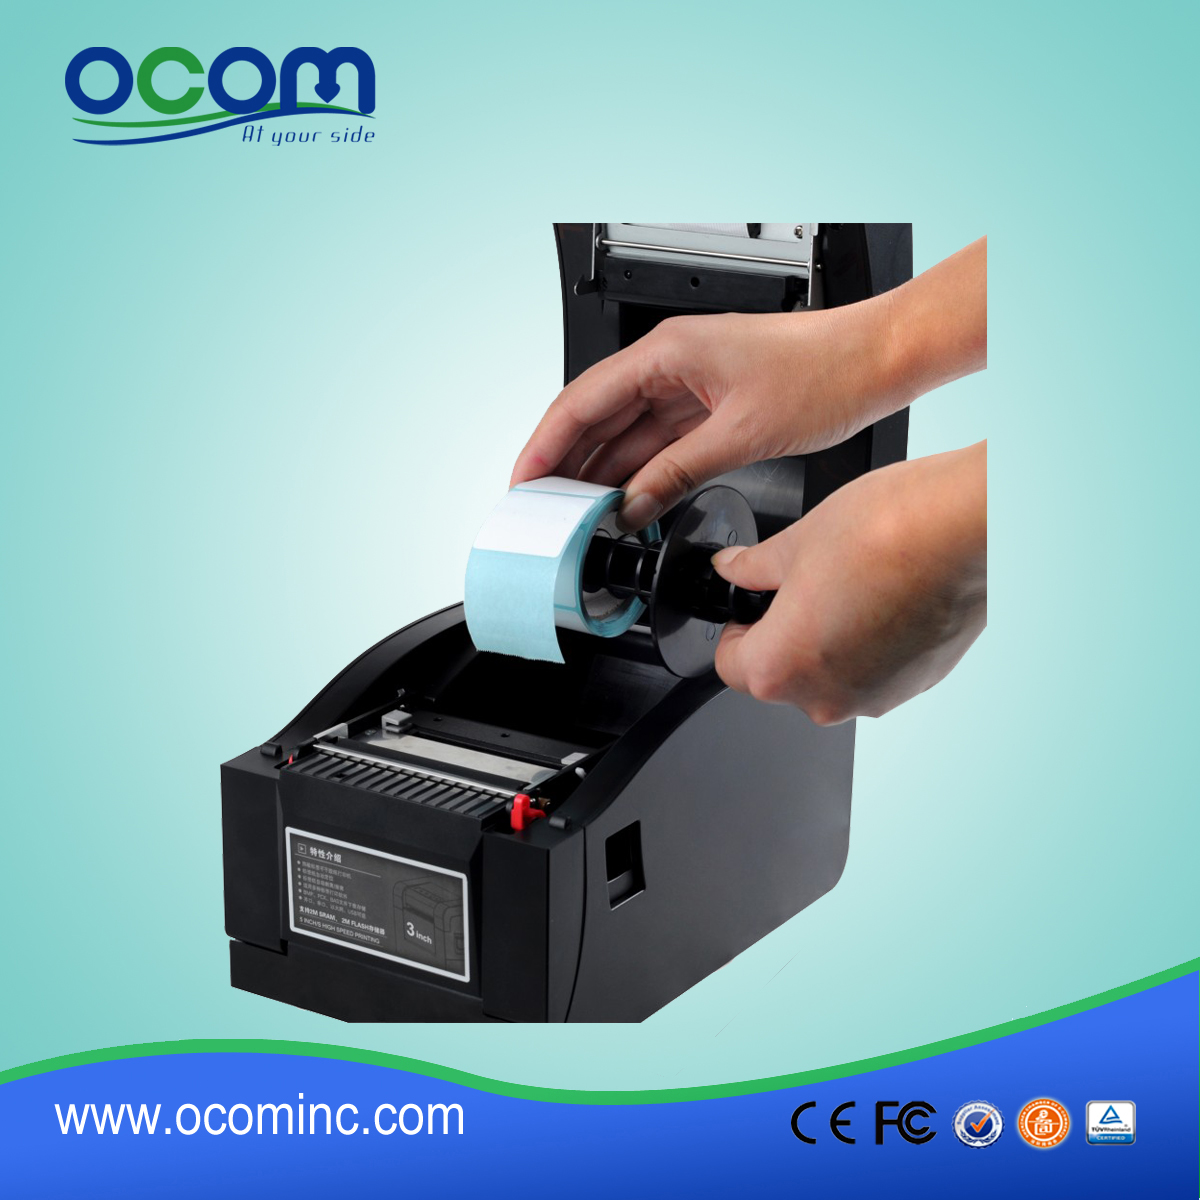 OCBP-005: Costo Airprint competitivo stampante di etichette barcode termica diretta